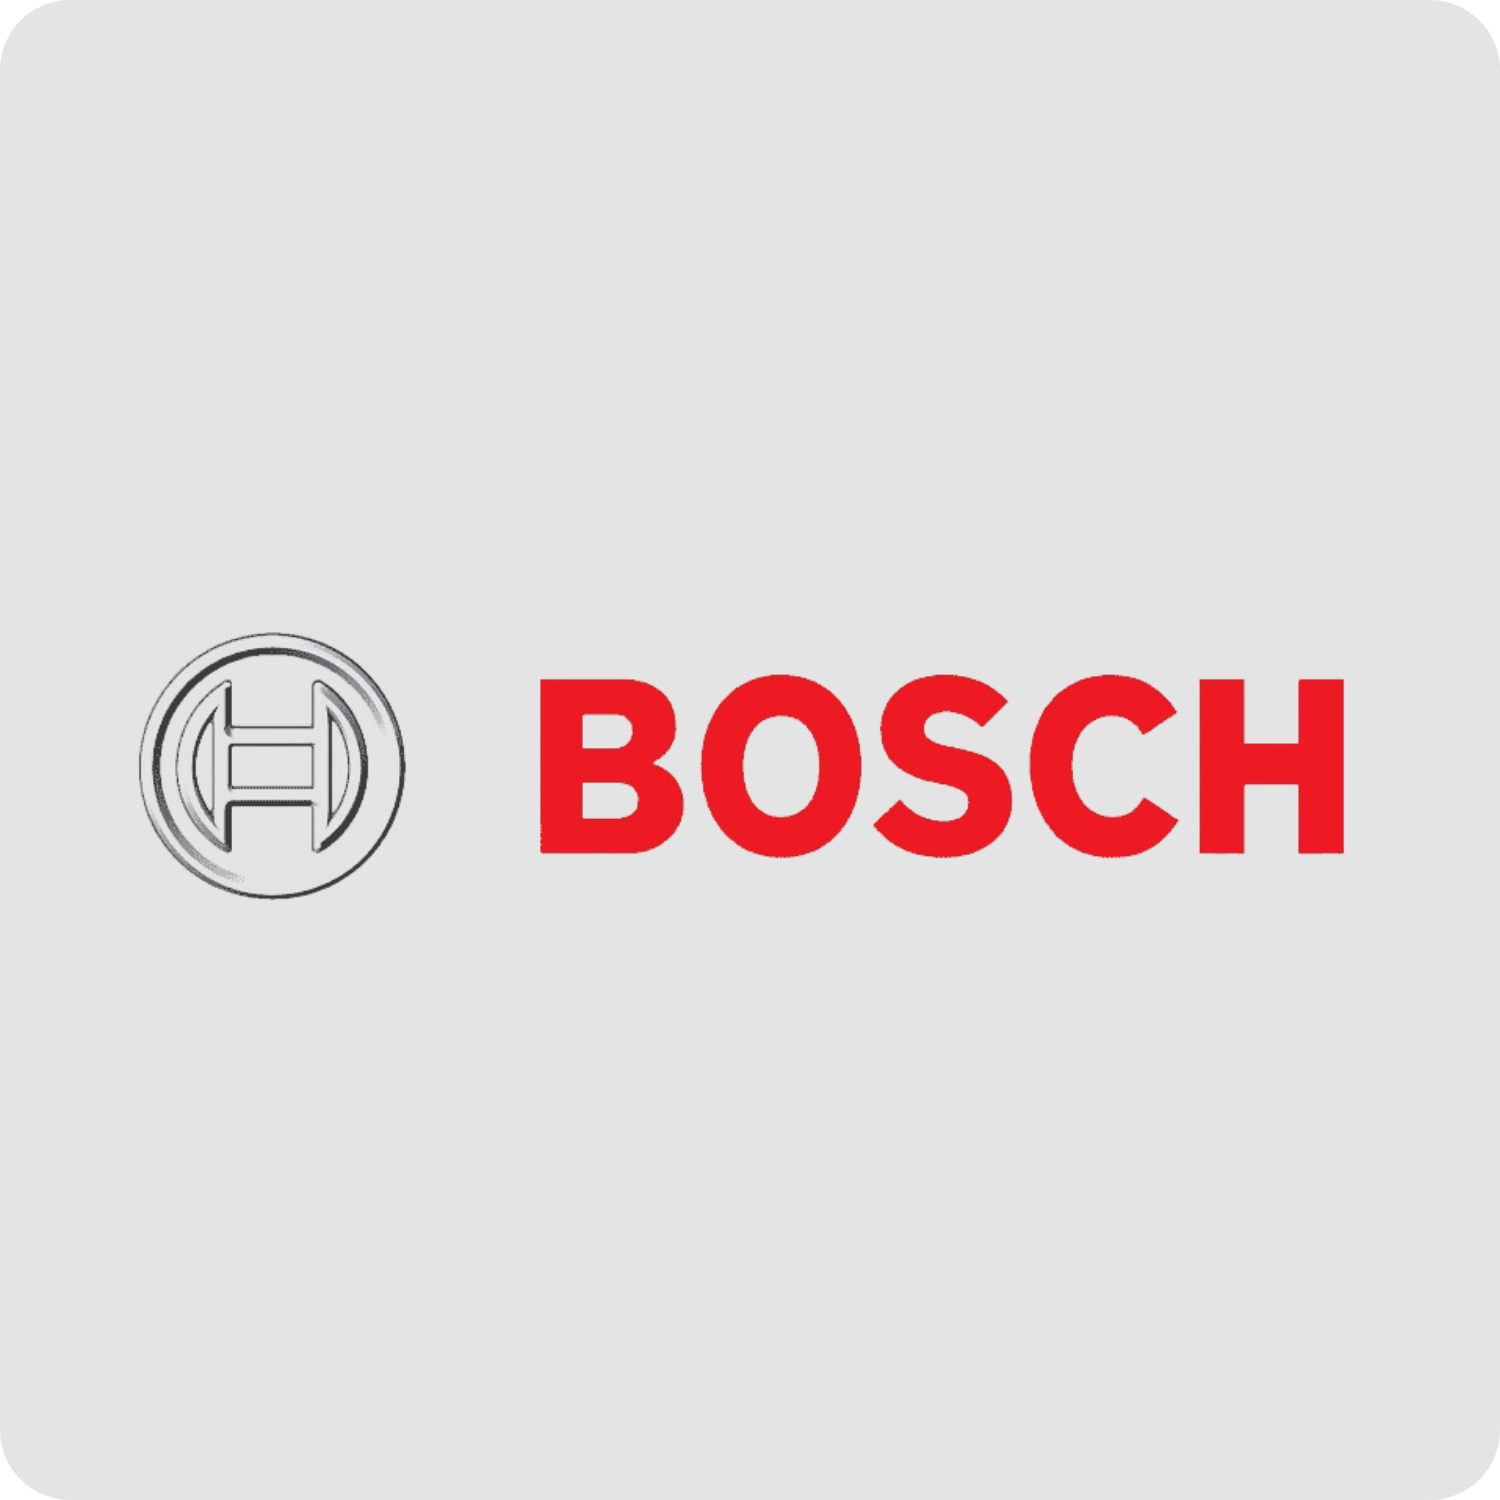 Agoan Brand Bosch Logo